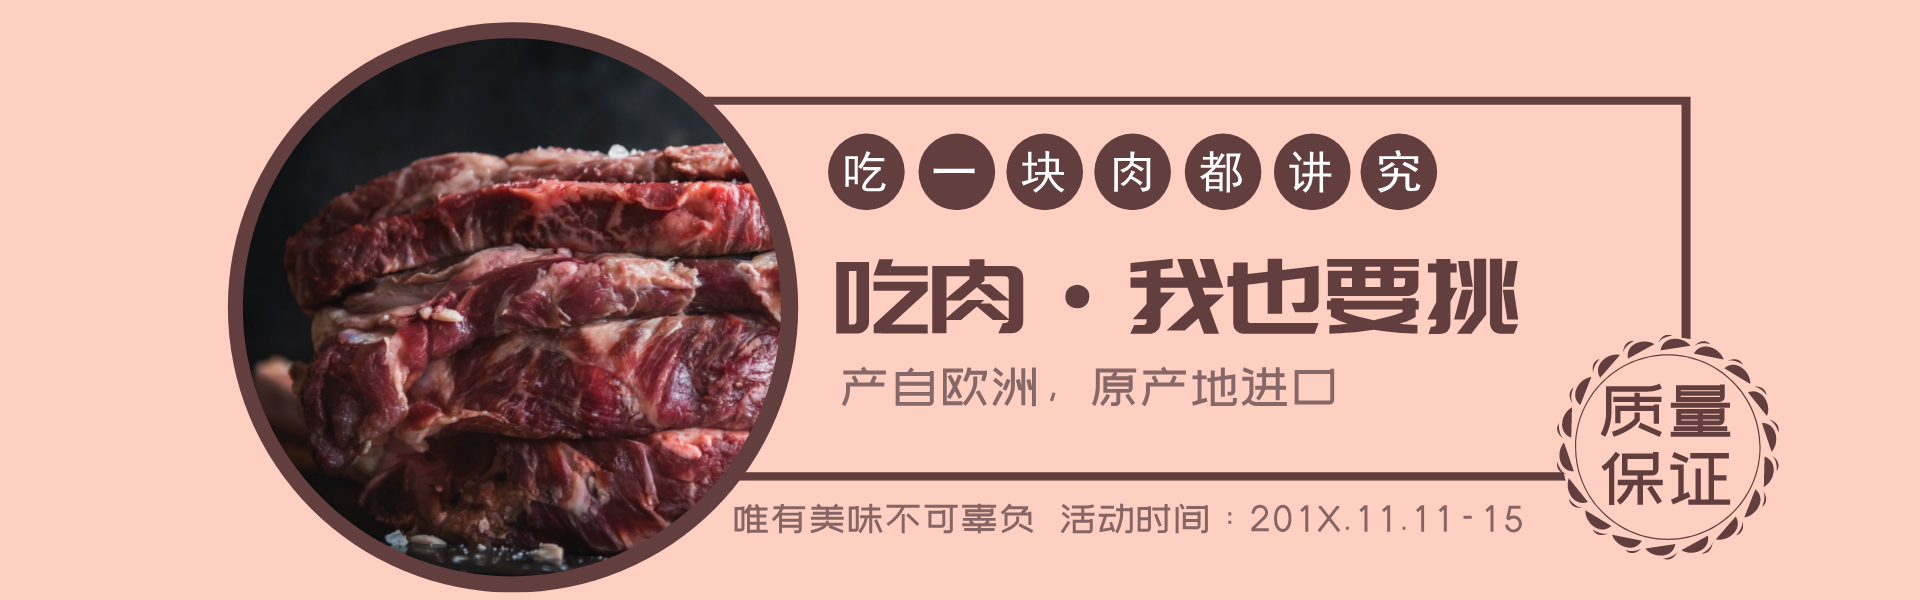 肉制品生鲜超市淘宝banner